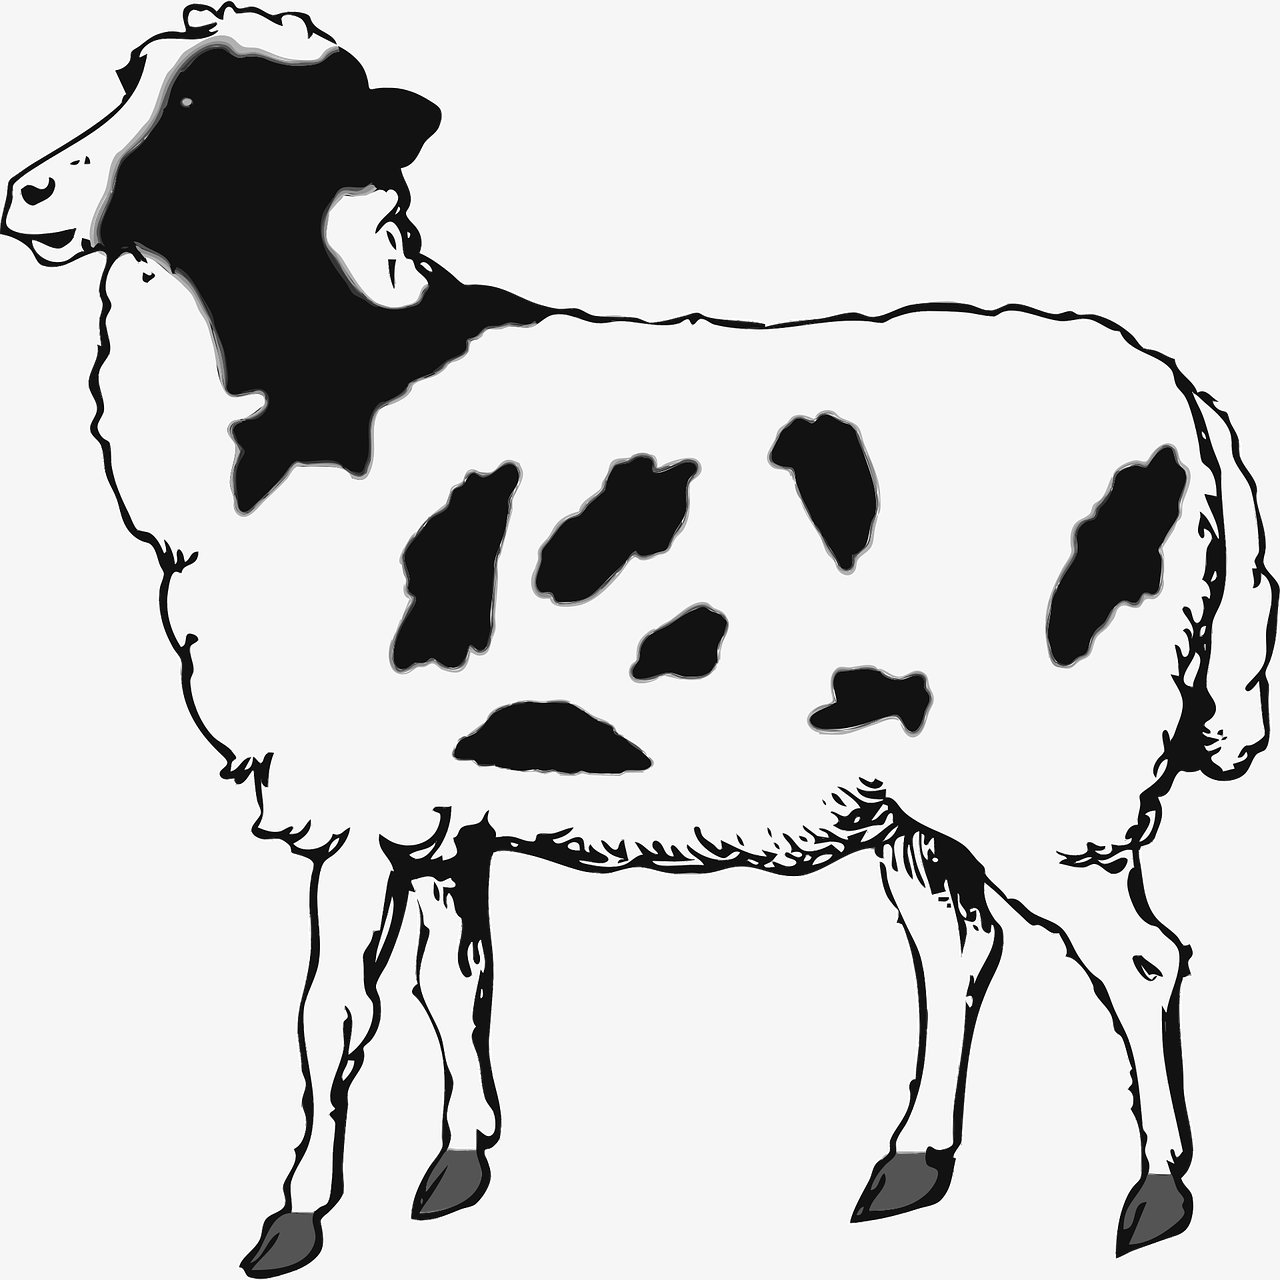 Dibujo para colorear de una oveja